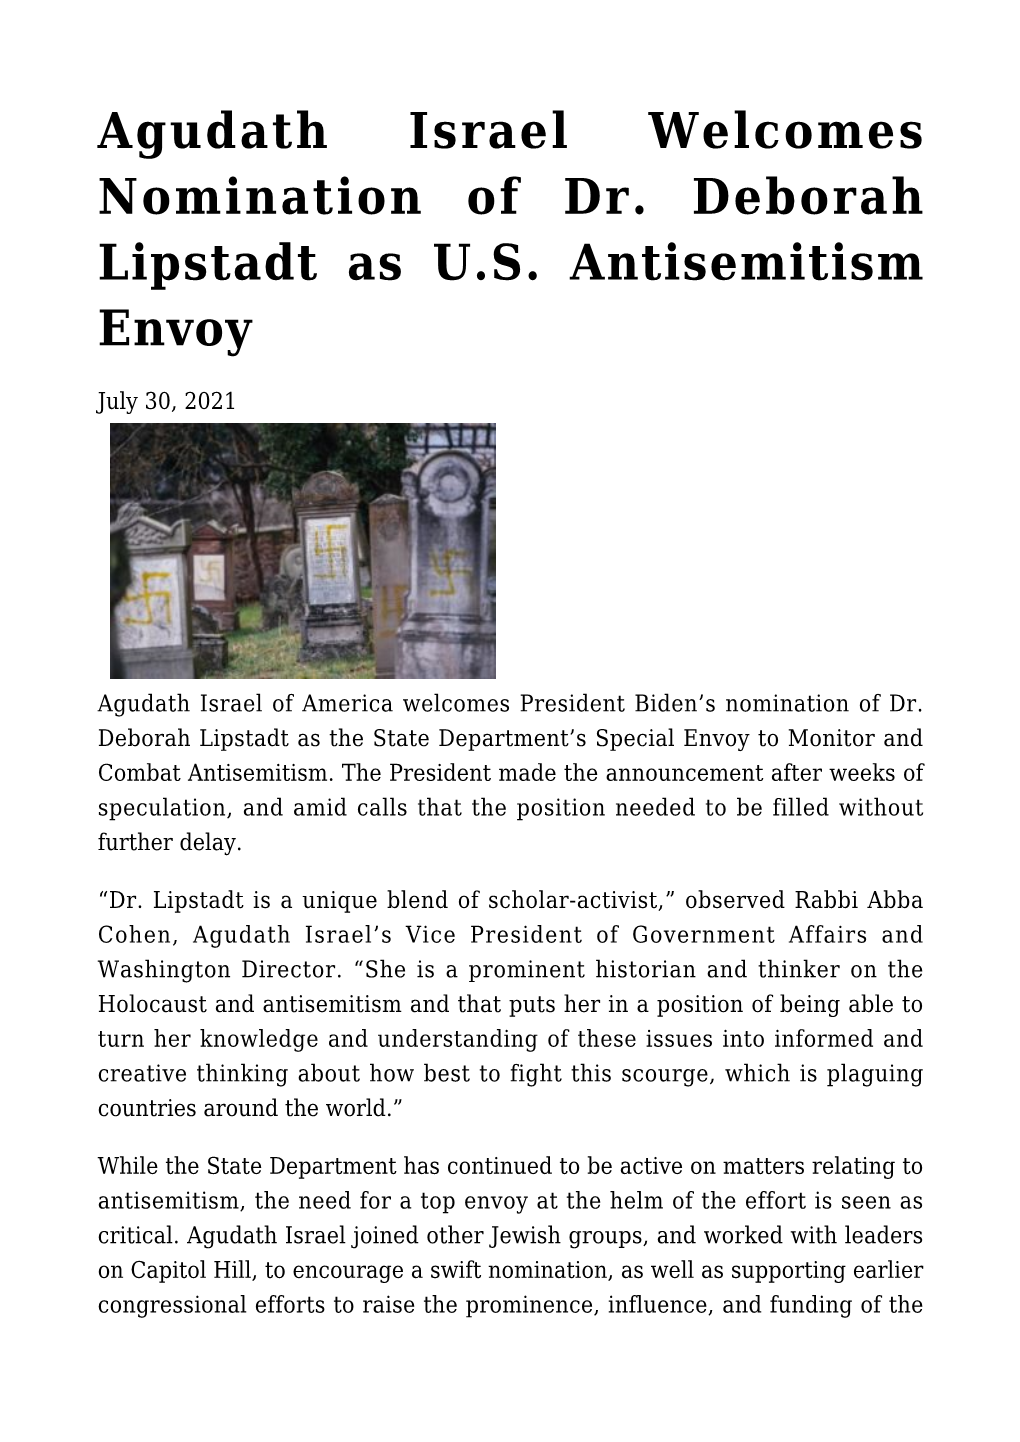 Agudath Israel Welcomes Nomination of Dr. Deborah Lipstadt As U.S. Antisemitism Envoy